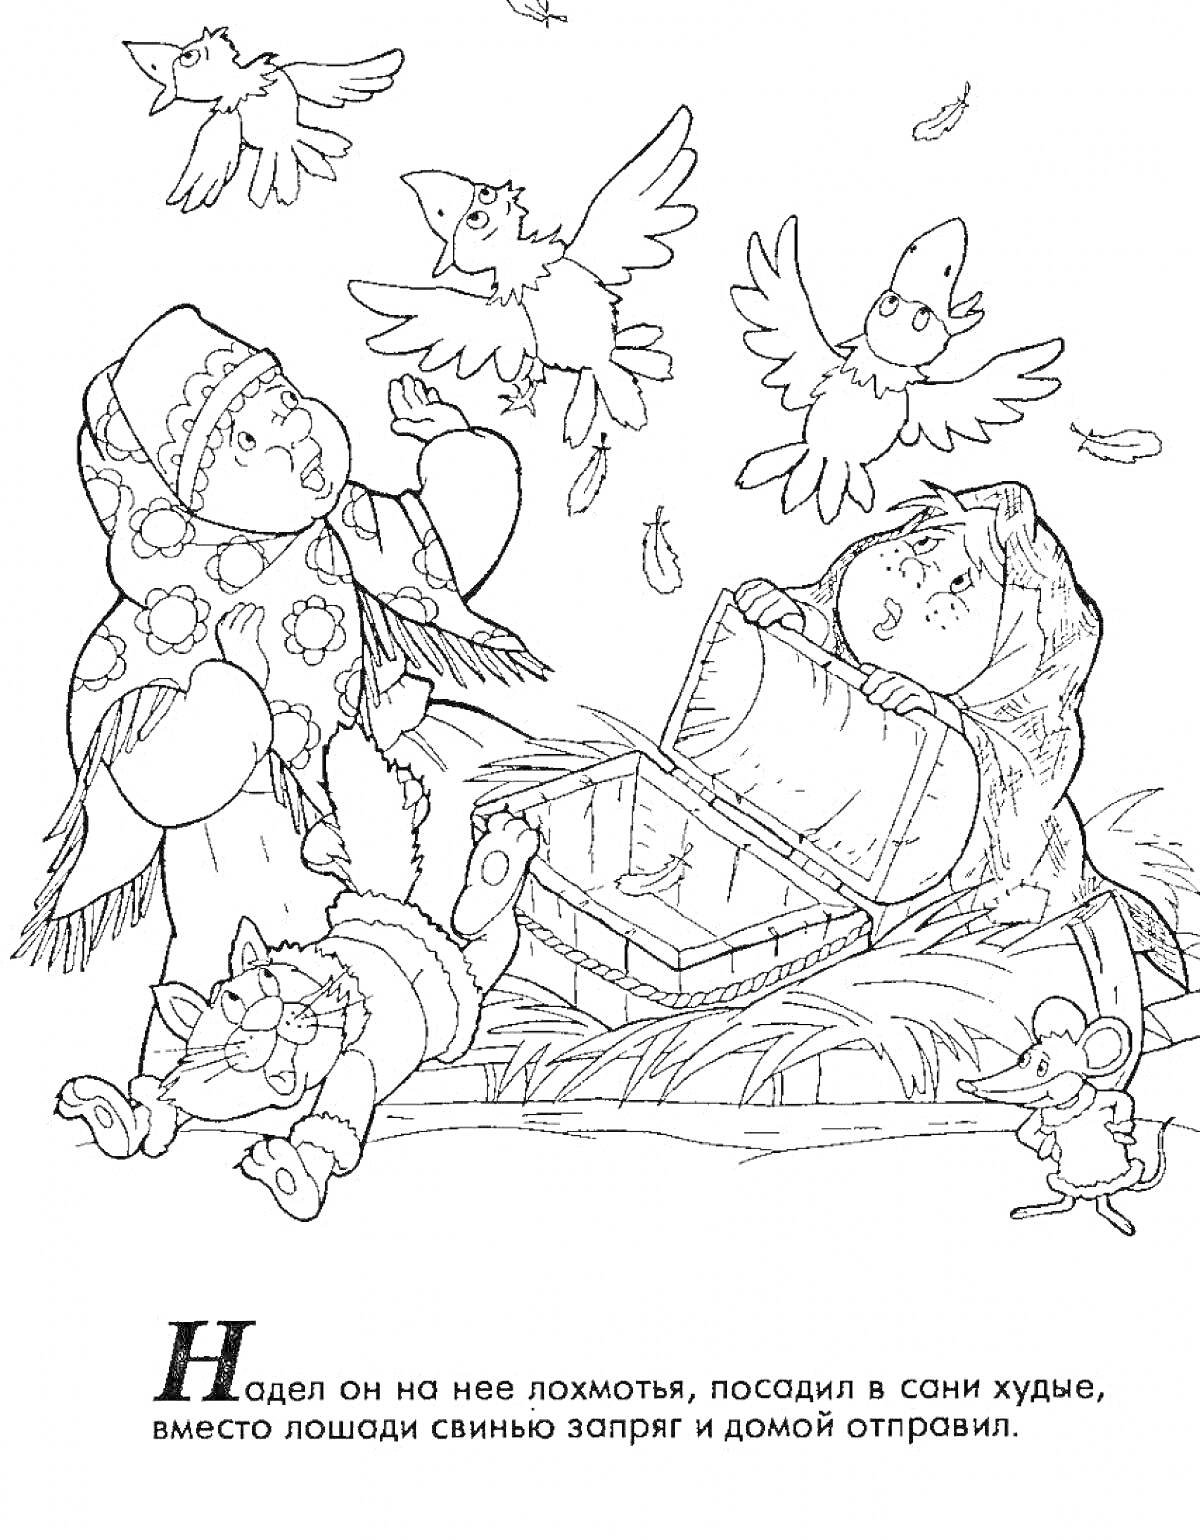 Раскраска Девушка в лохмотьях в санях, птицы, мыши и богатый сундук с сокровищами